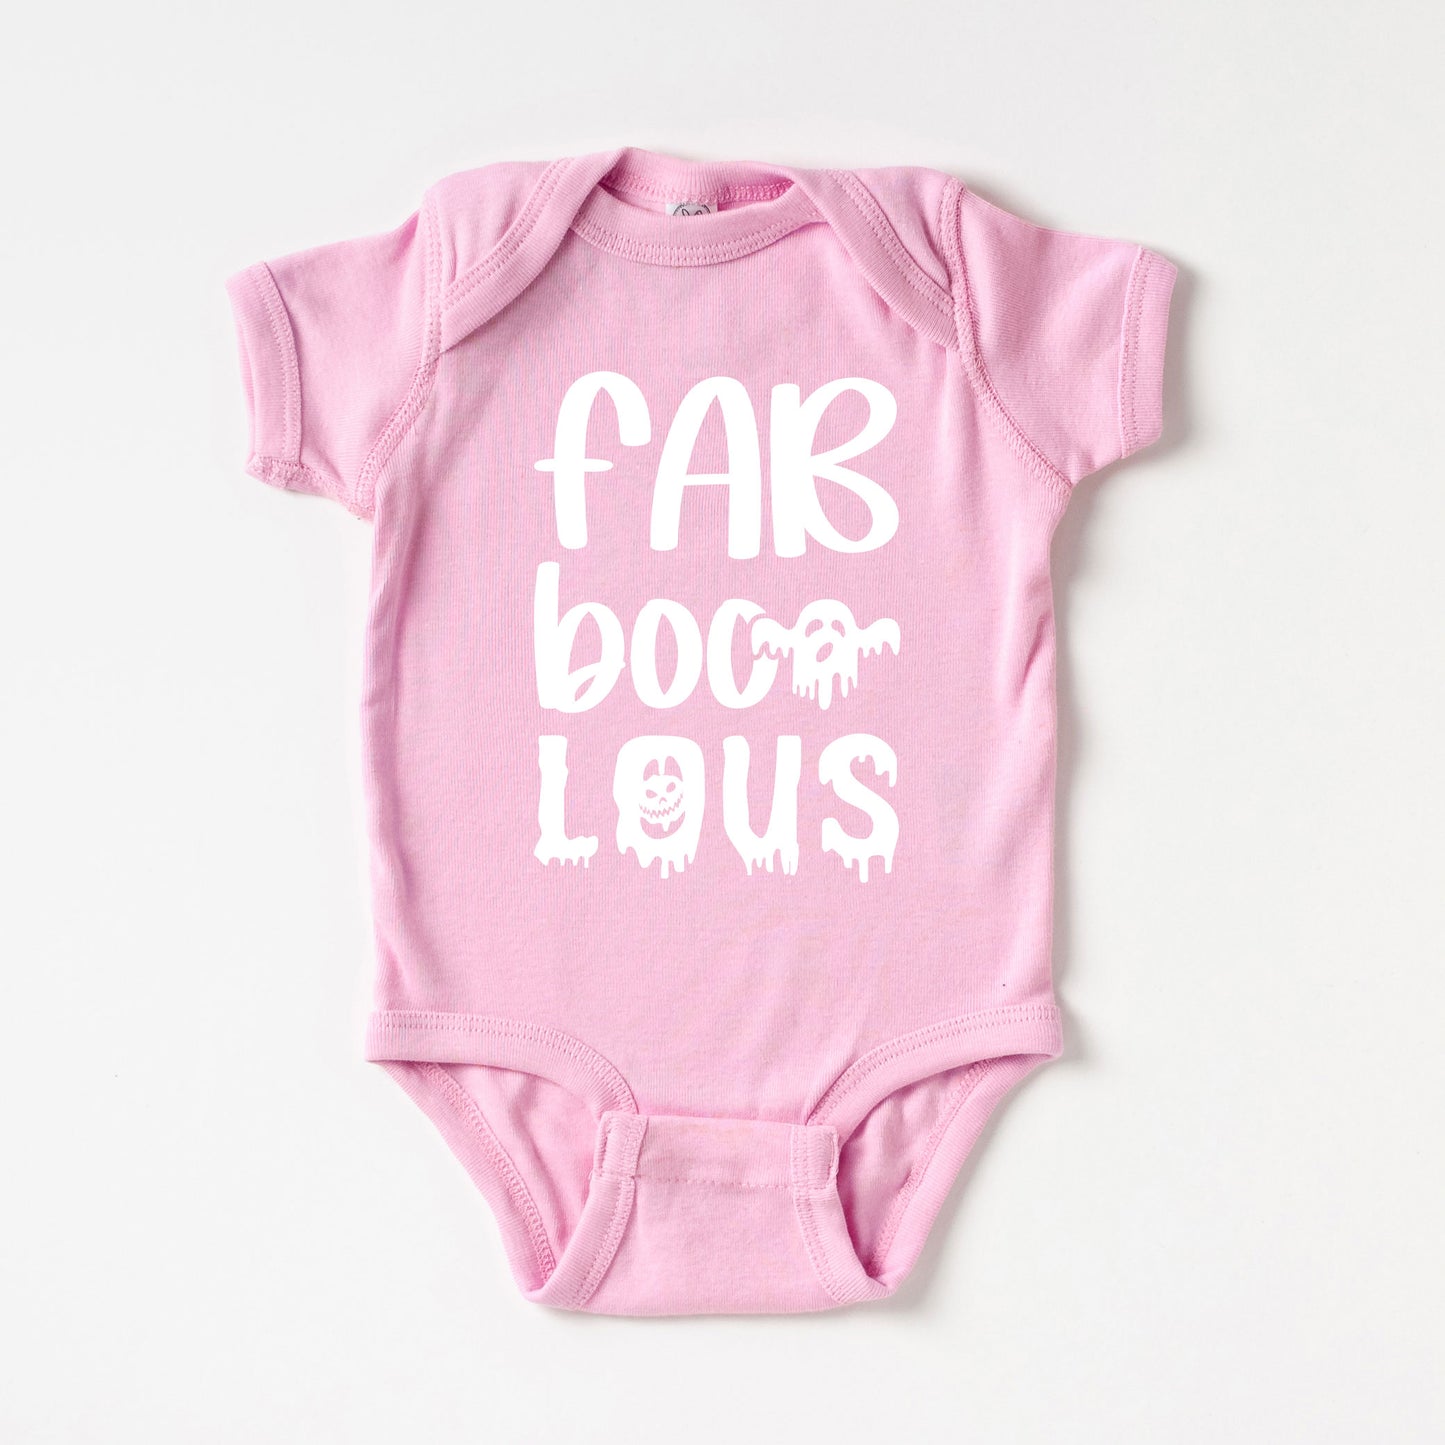 Fabboolus | Baby Graphic Short Sleeve Onesie